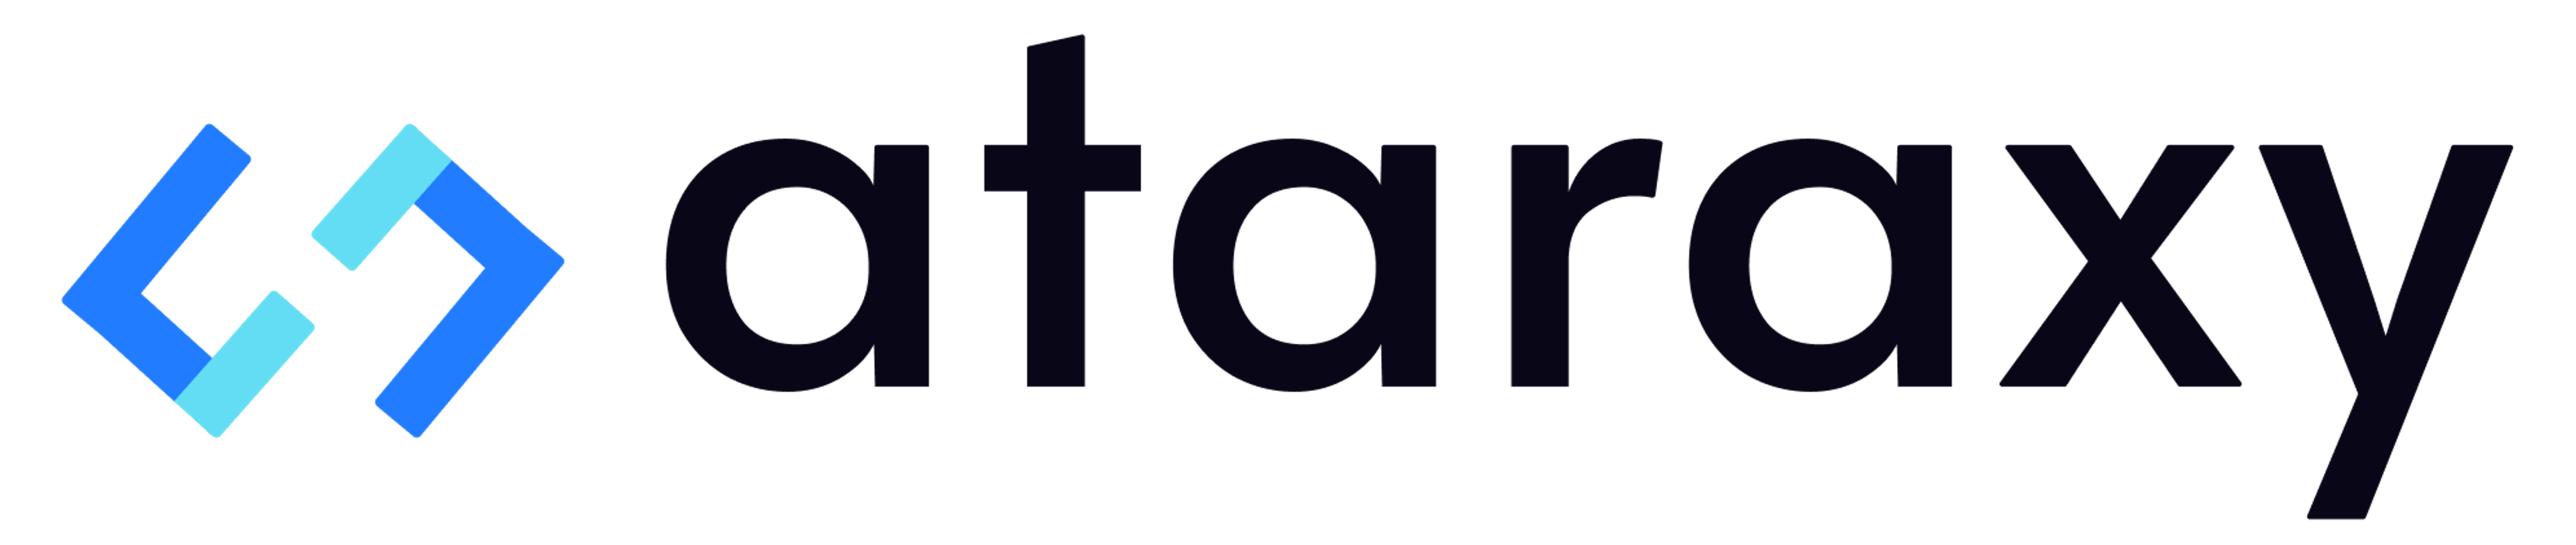 Ataraxy logo